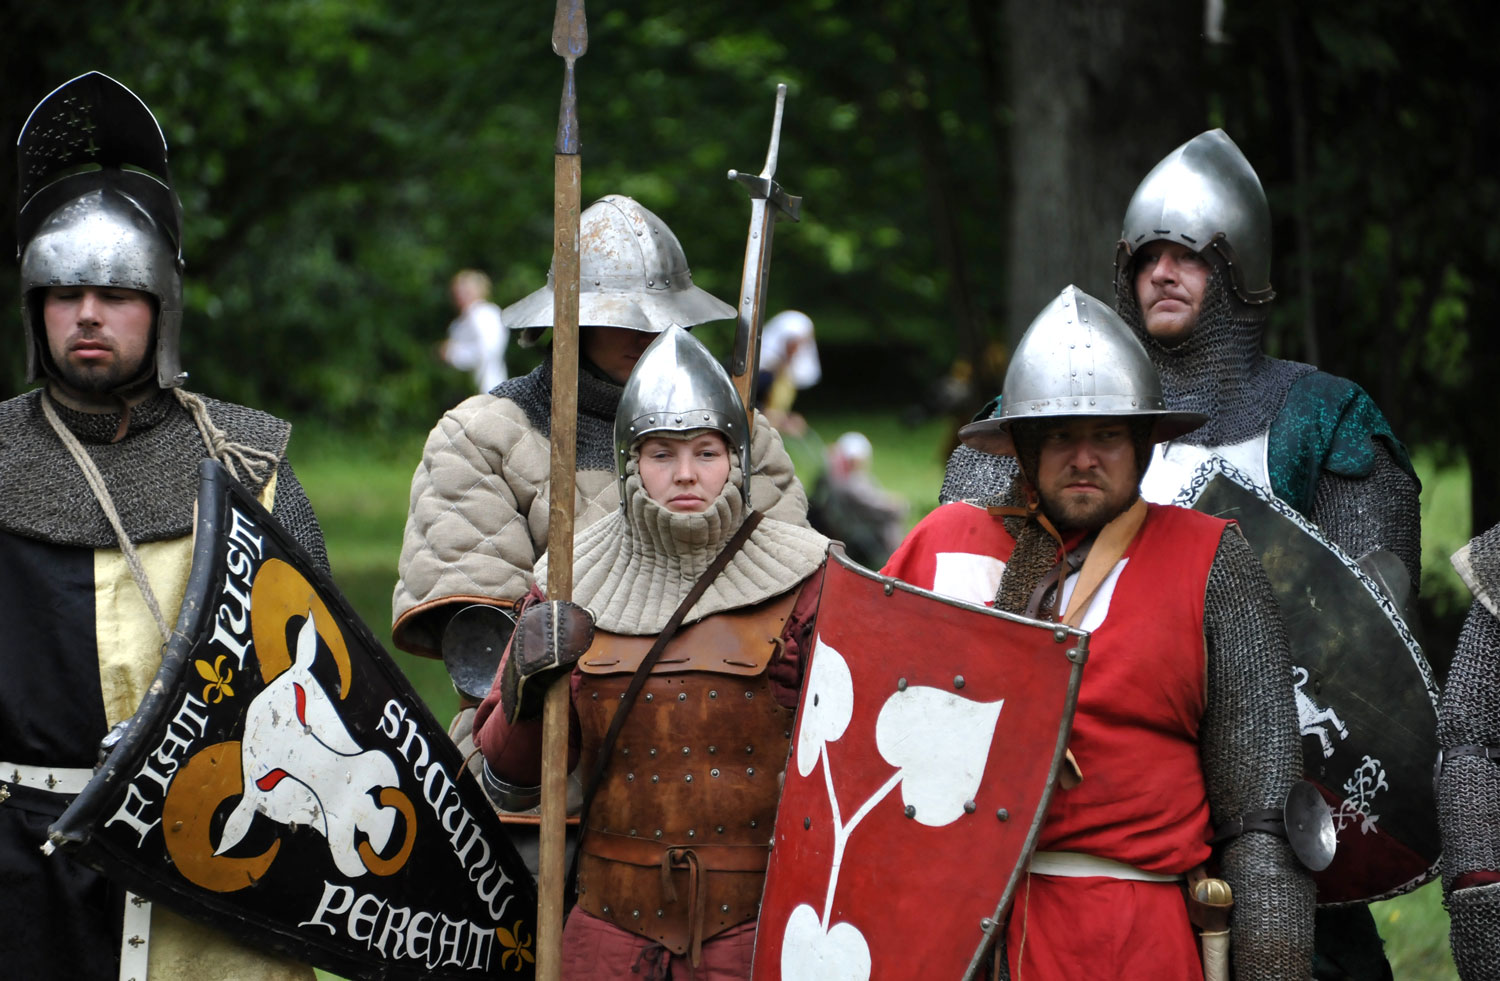 Människor i medeltida stridskläder och vapen.